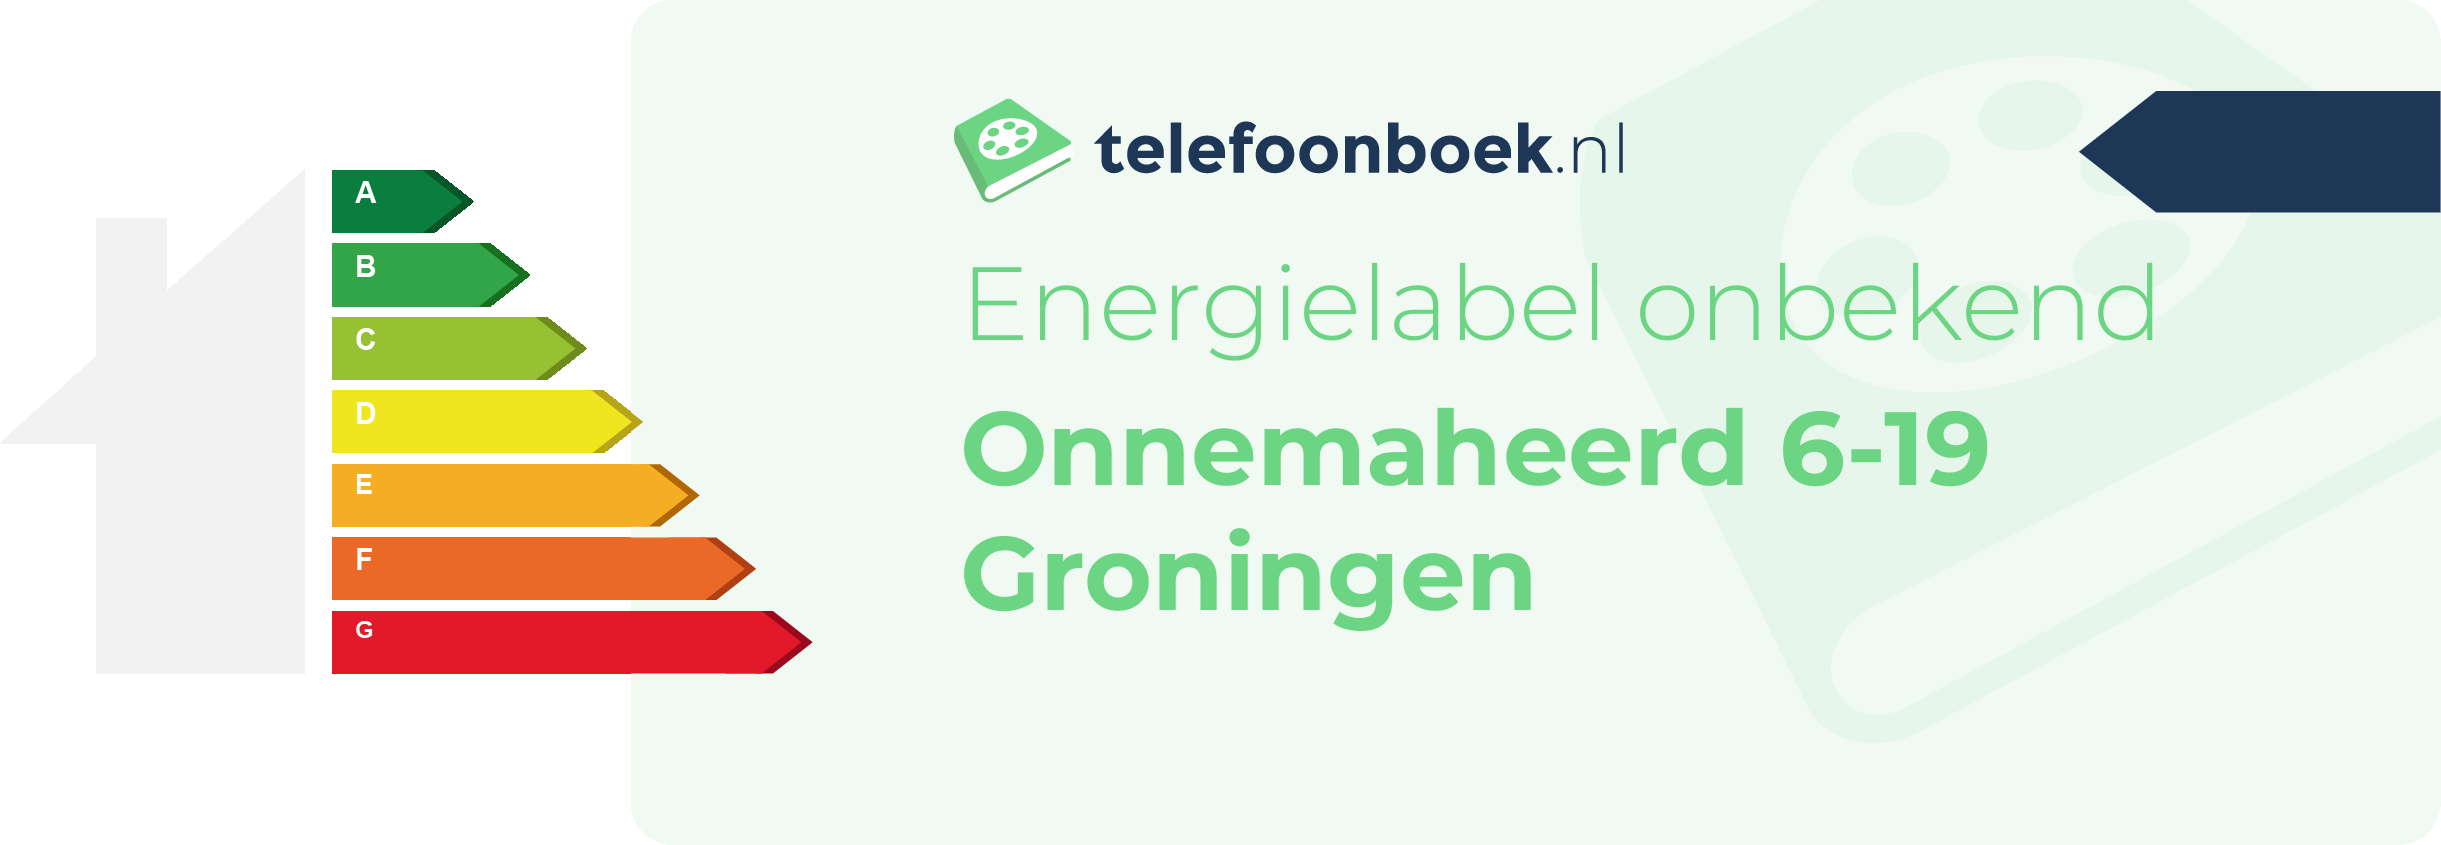 Energielabel Onnemaheerd 6-19 Groningen